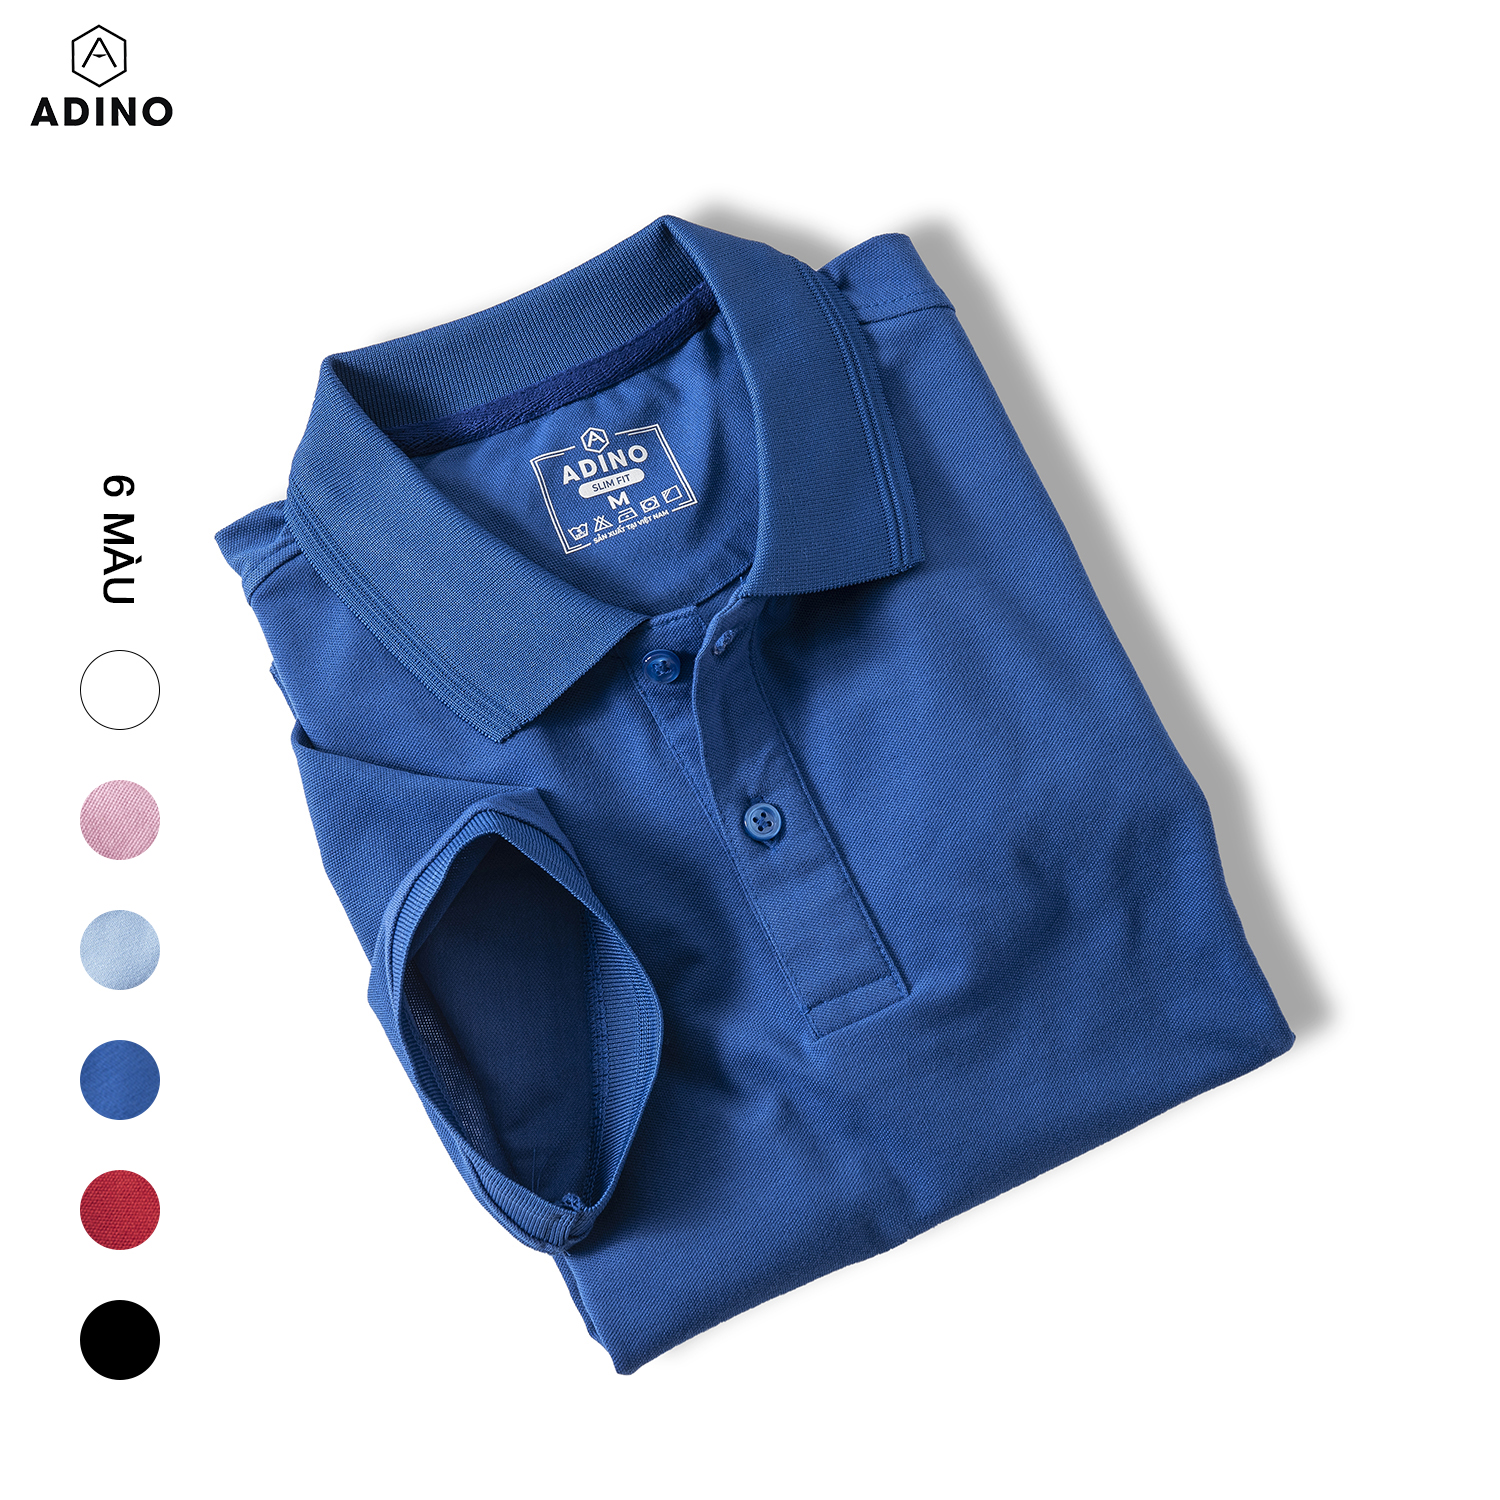 Áo polo nữ màu xanh bích đậm phối viền chìm ADINO vải cotton polyester mềm dáng slimfit công sở hơi ôm trẻ trung APN03